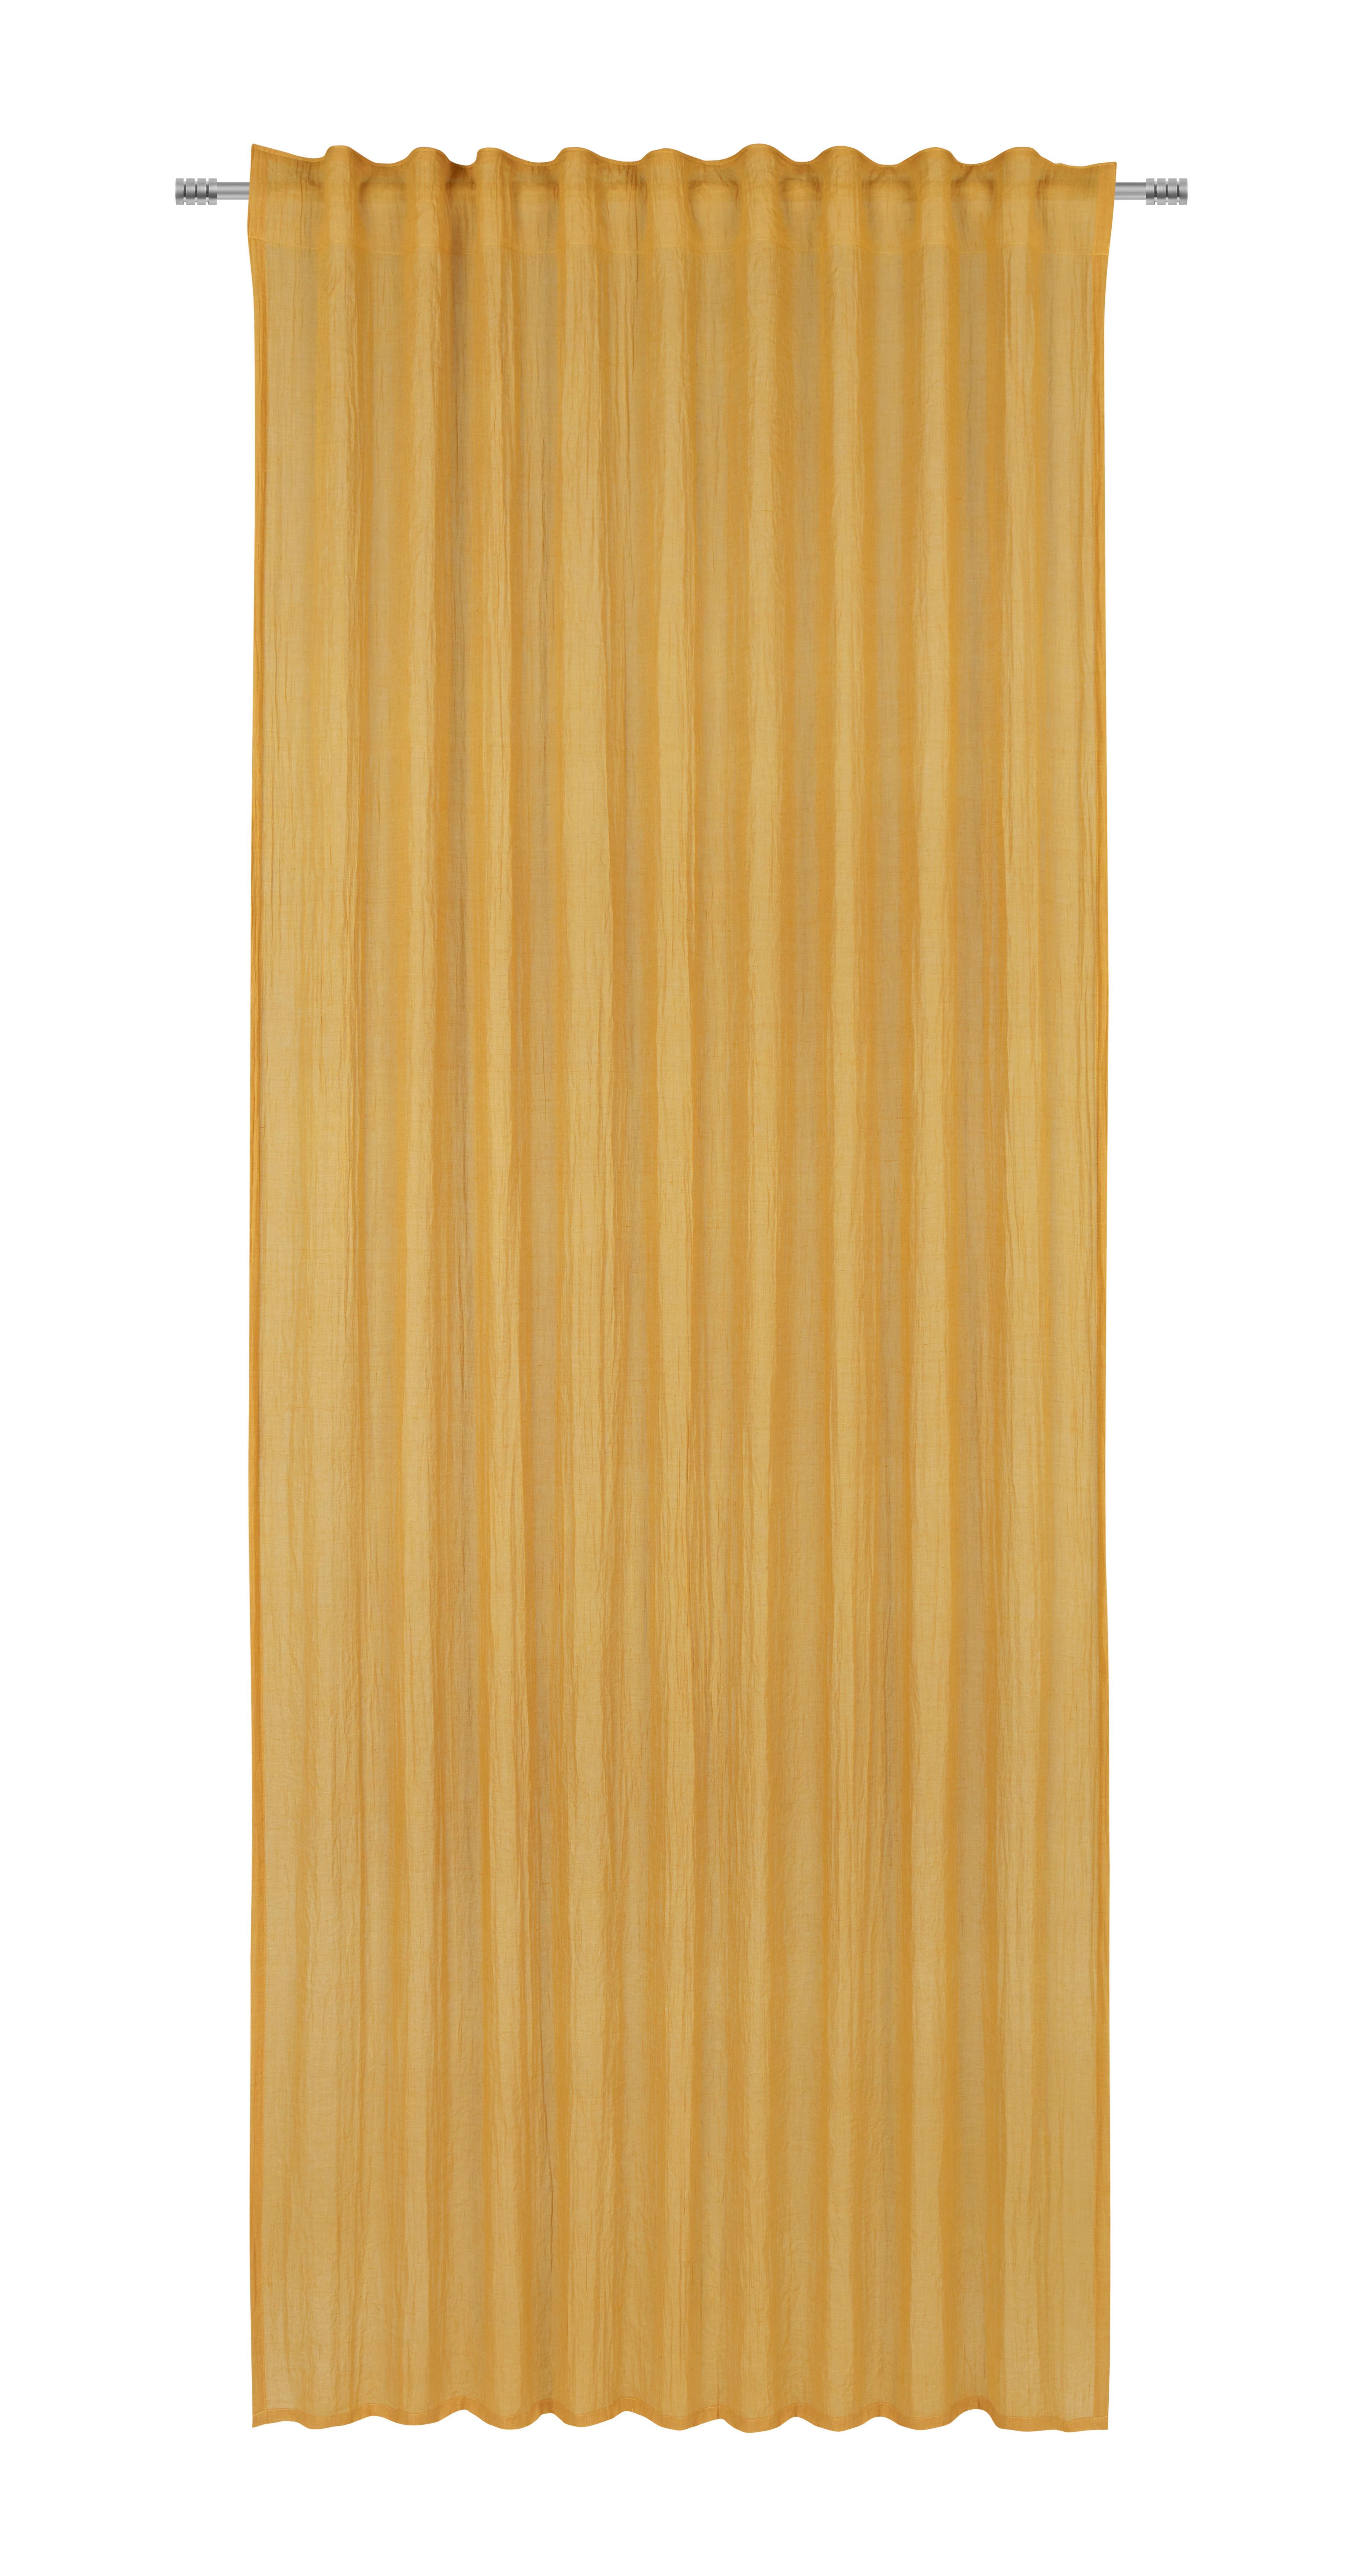 Perdea confecționată Ramona - galben, Modern, textil (135/245cm) - Modern Living